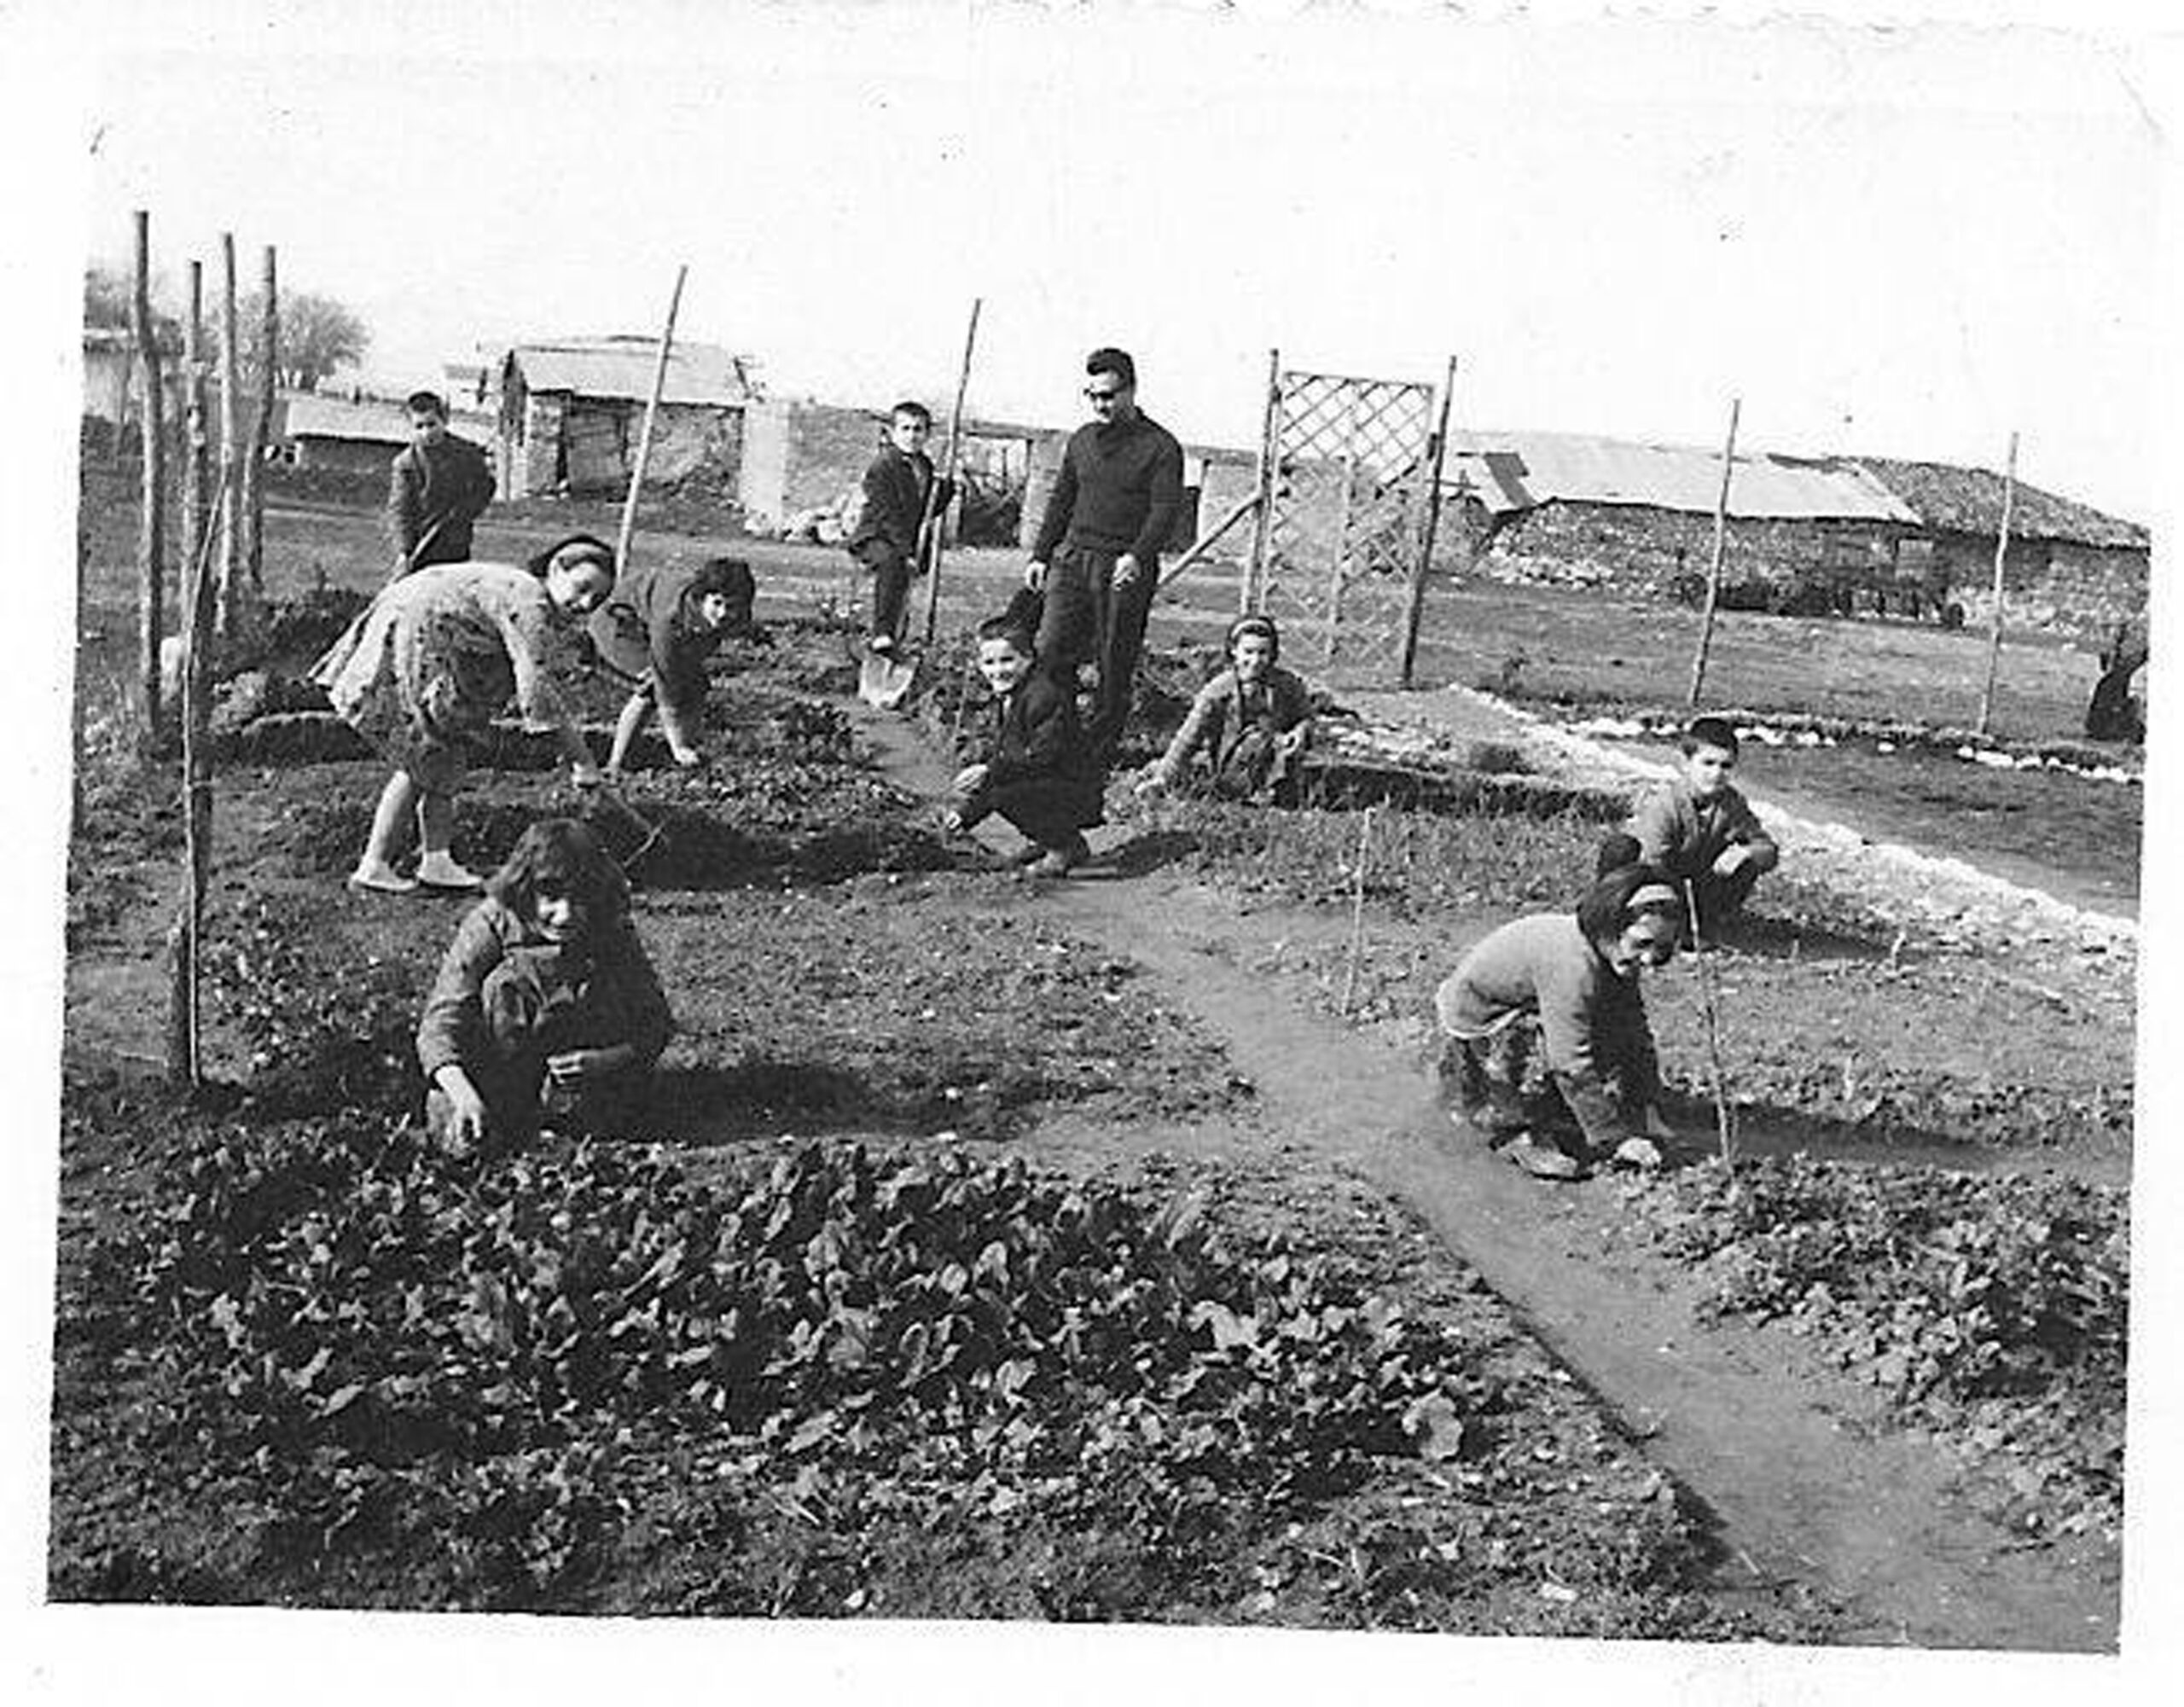 Δημοτικό σχολείου Καστρακίου 1955 - Σχολικός κήπος